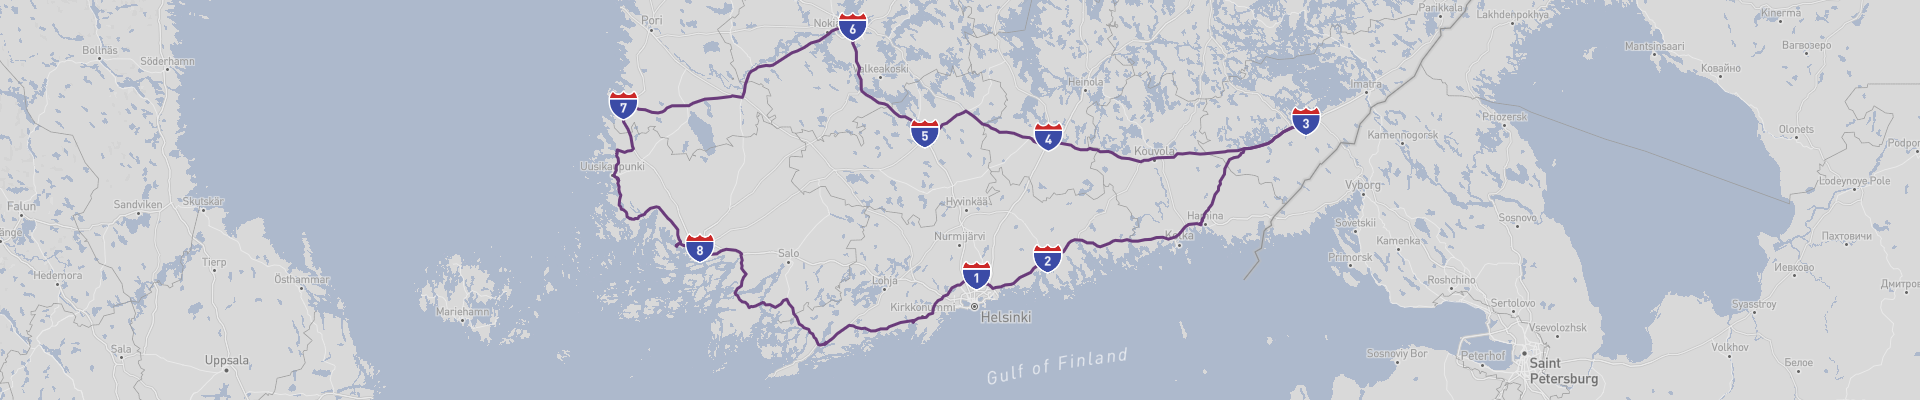 Süd-Finnland Roadtrip